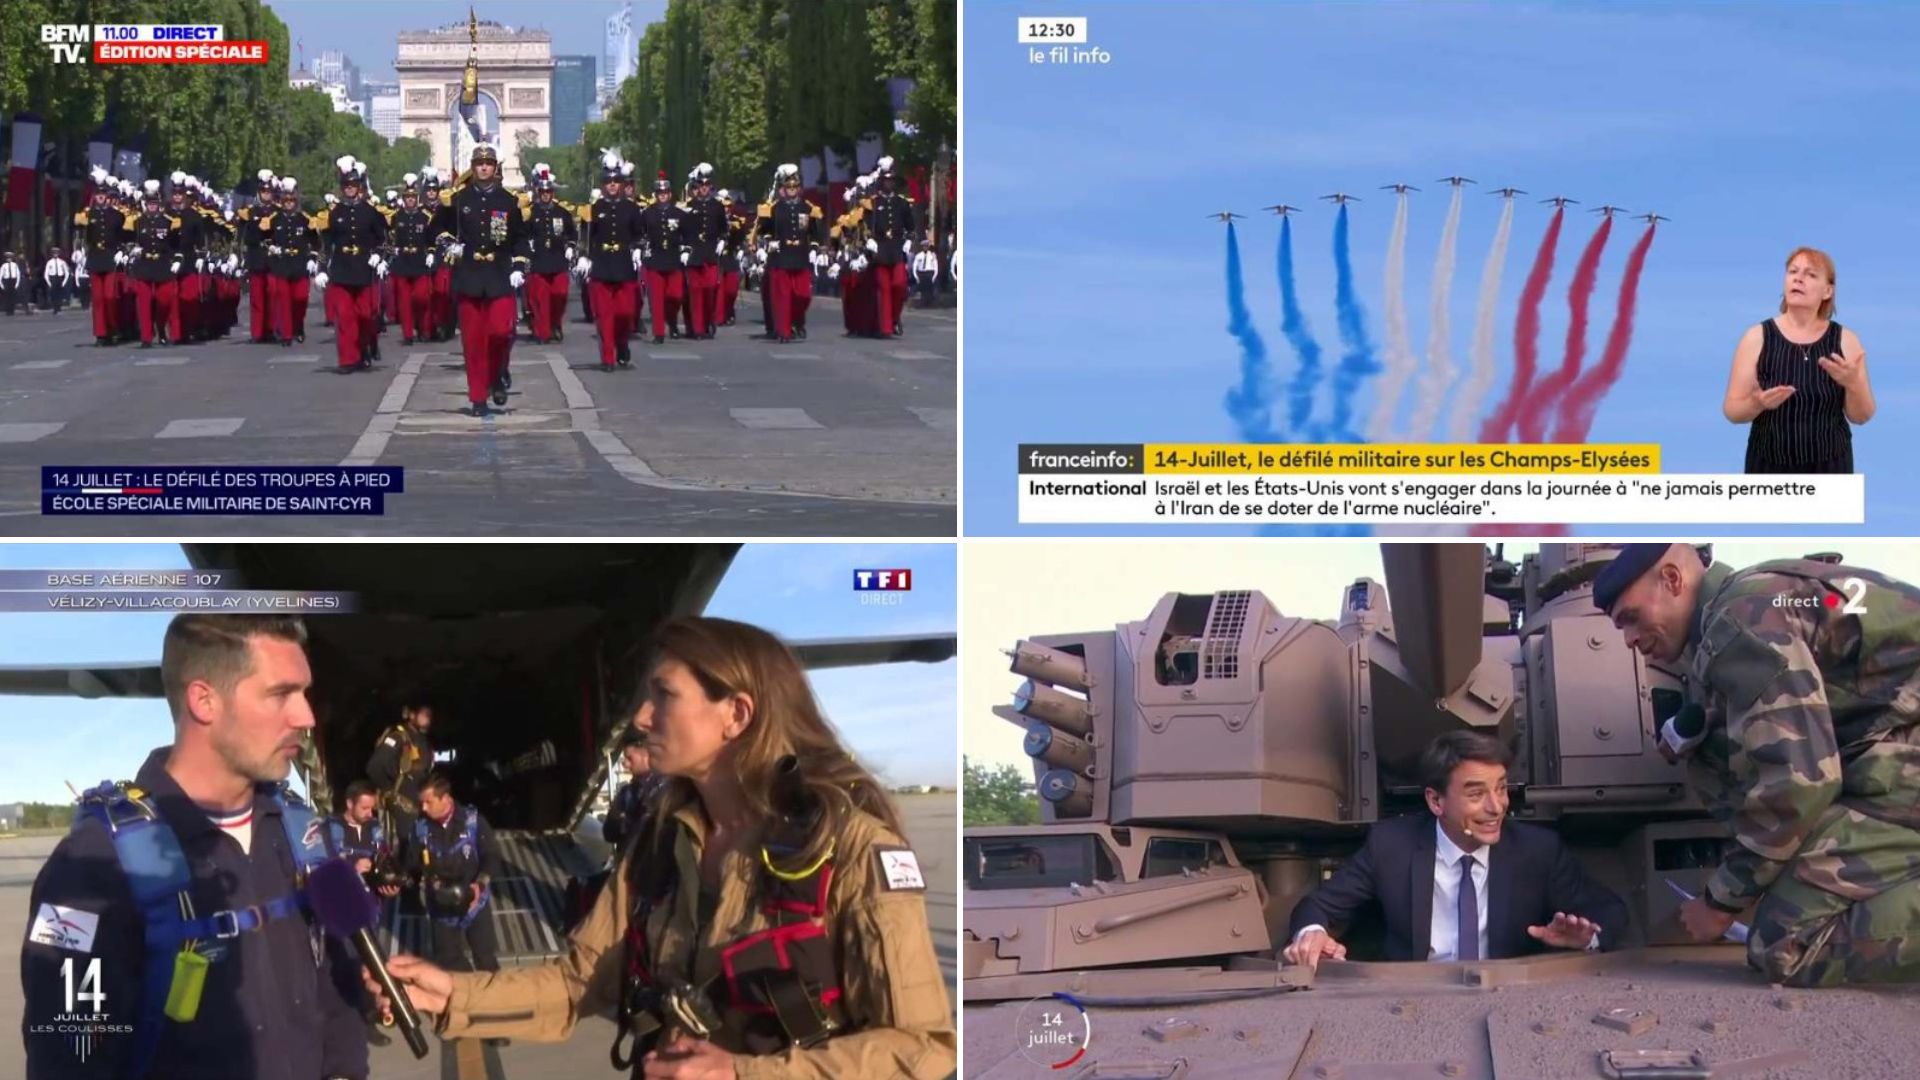 Le défilé militaire du 14 juillet est couvert dès ses préparatifs par les chaînes télévisées, et retransmis en direct.